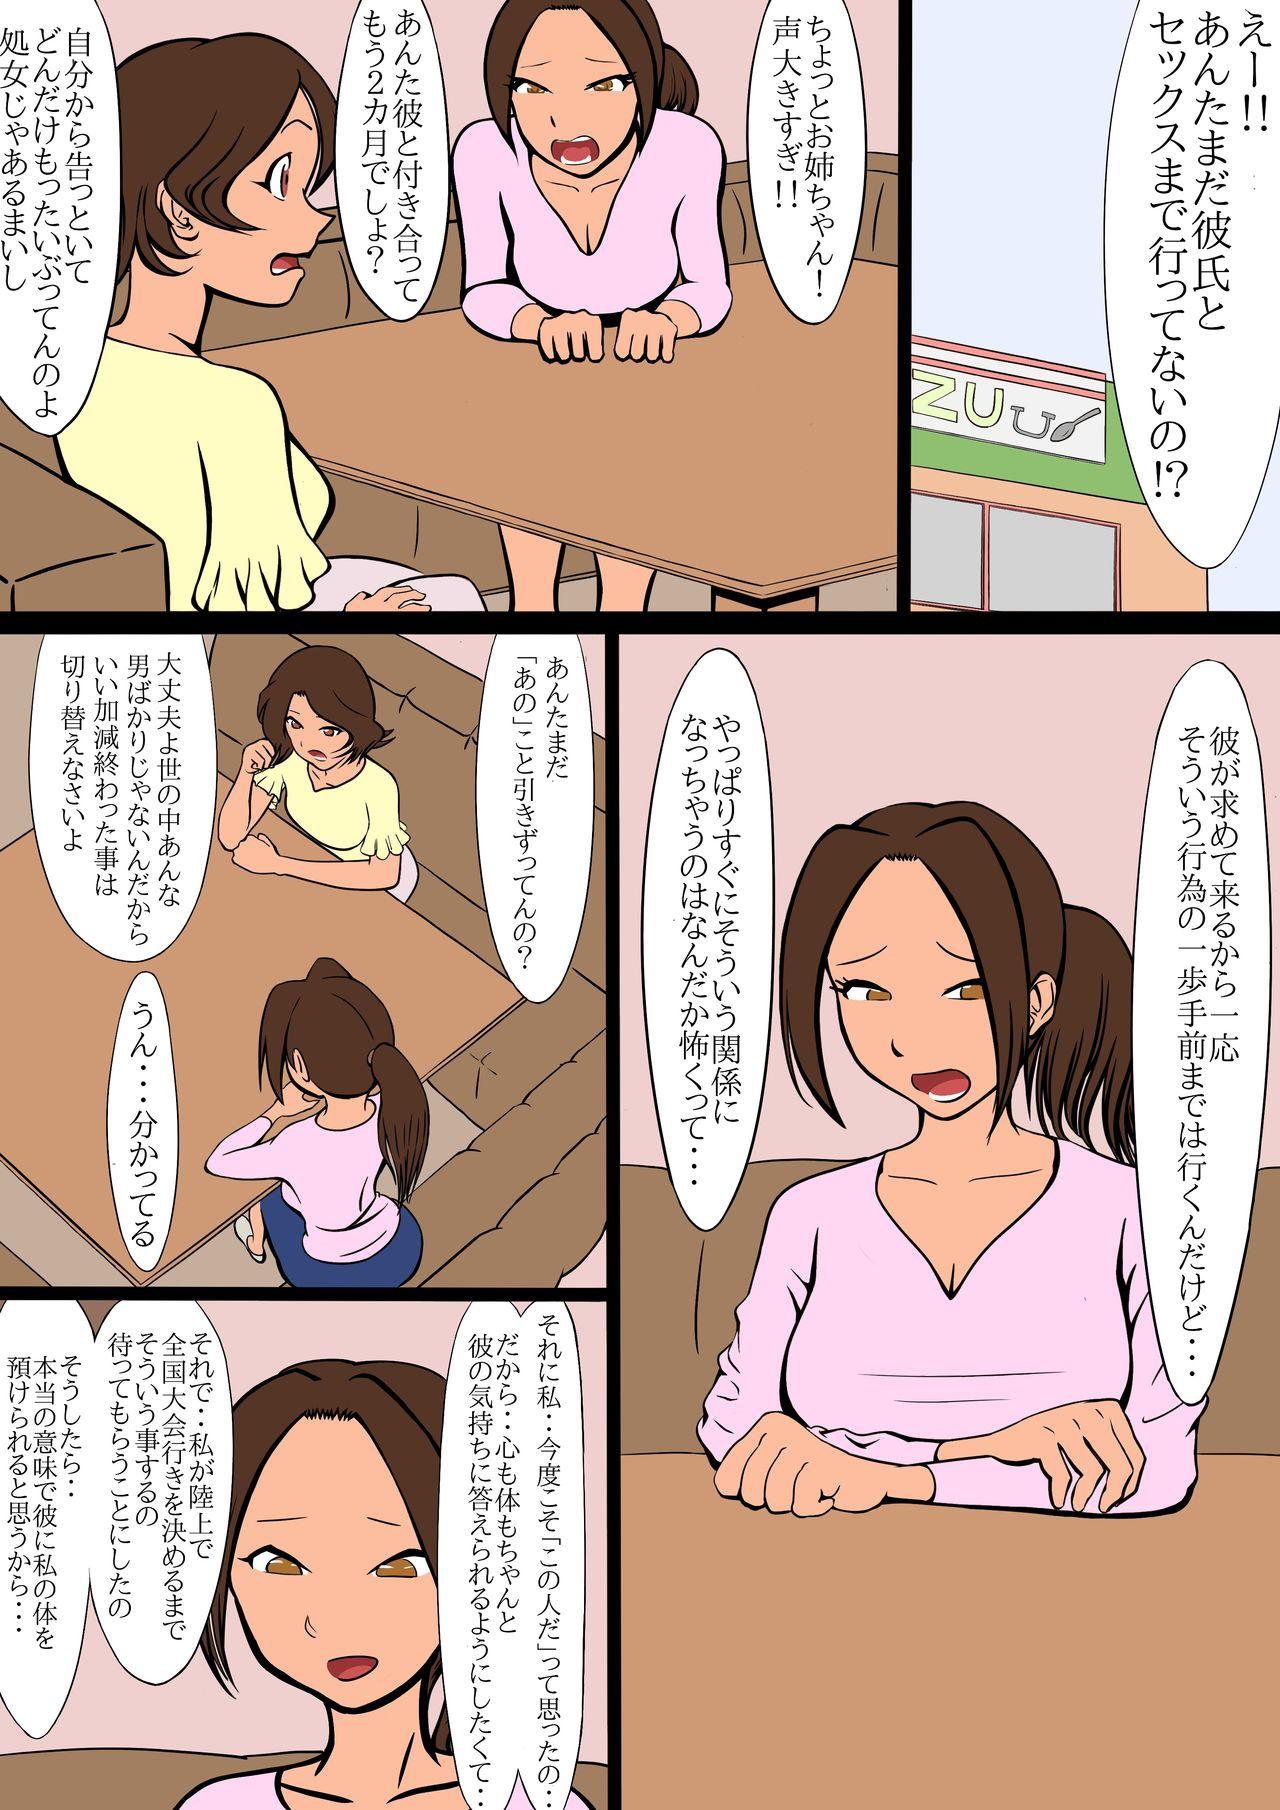 Sex netorare furasshu bakku - Original Desnuda - Page 11